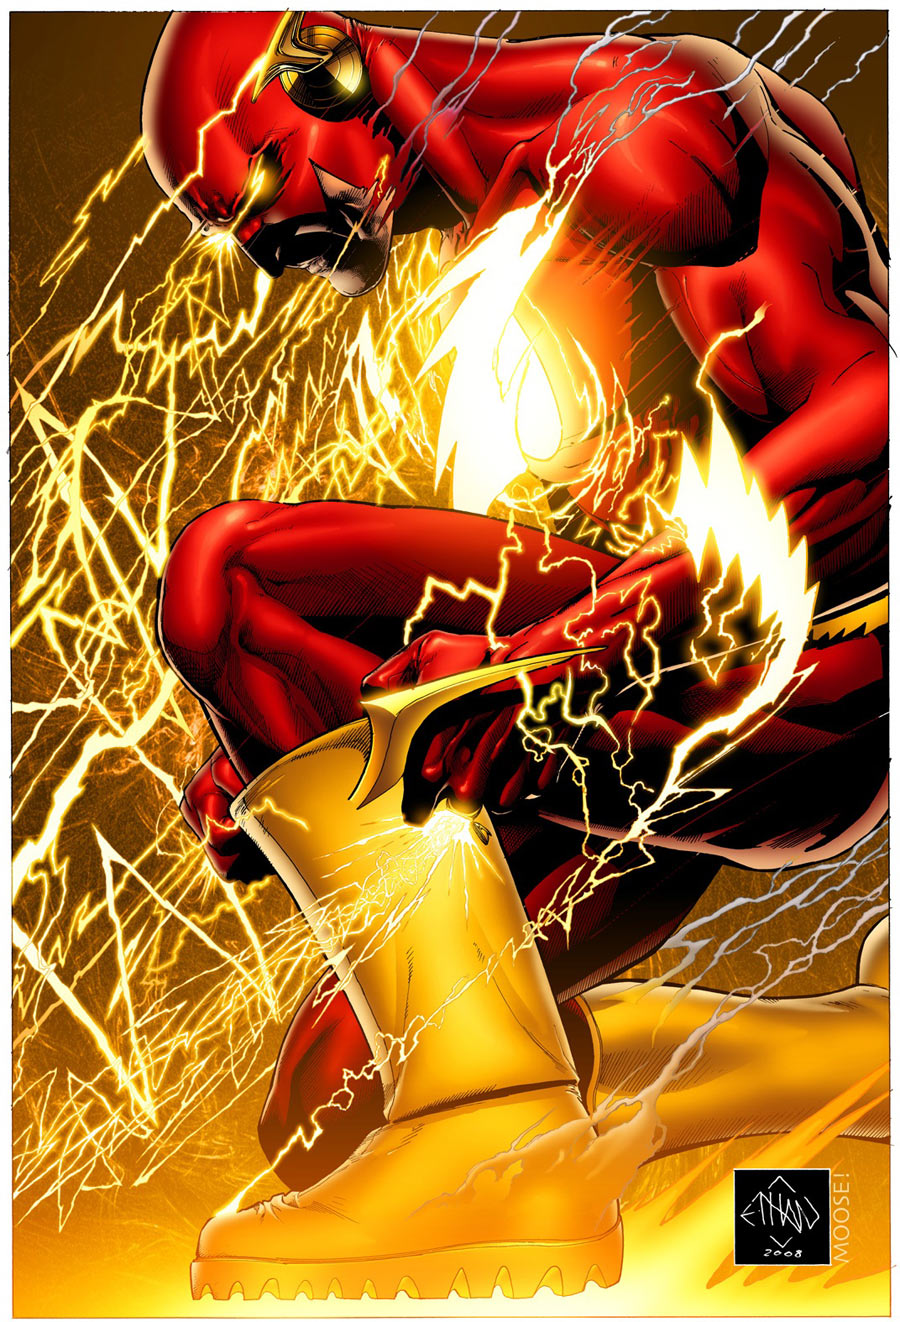 The Flash: Rebirth